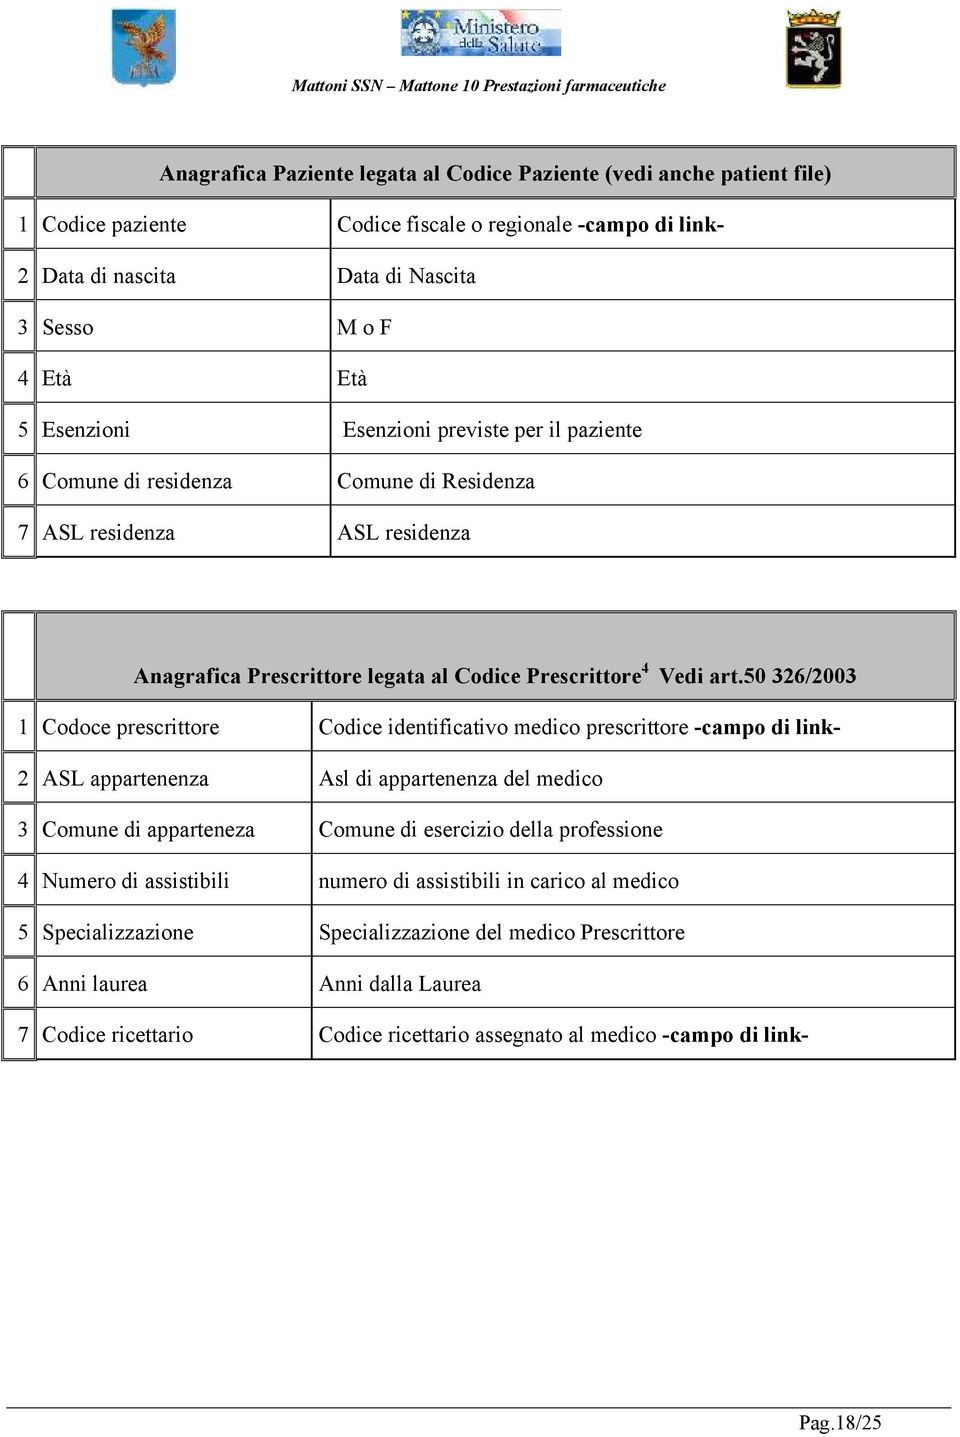 50 326/2003 1 Codoce prescrittore Codice identificativo medico prescrittore -campo di link- 2 ASL appartenenza Asl di appartenenza del medico 3 Comune di apparteneza Comune di esercizio della